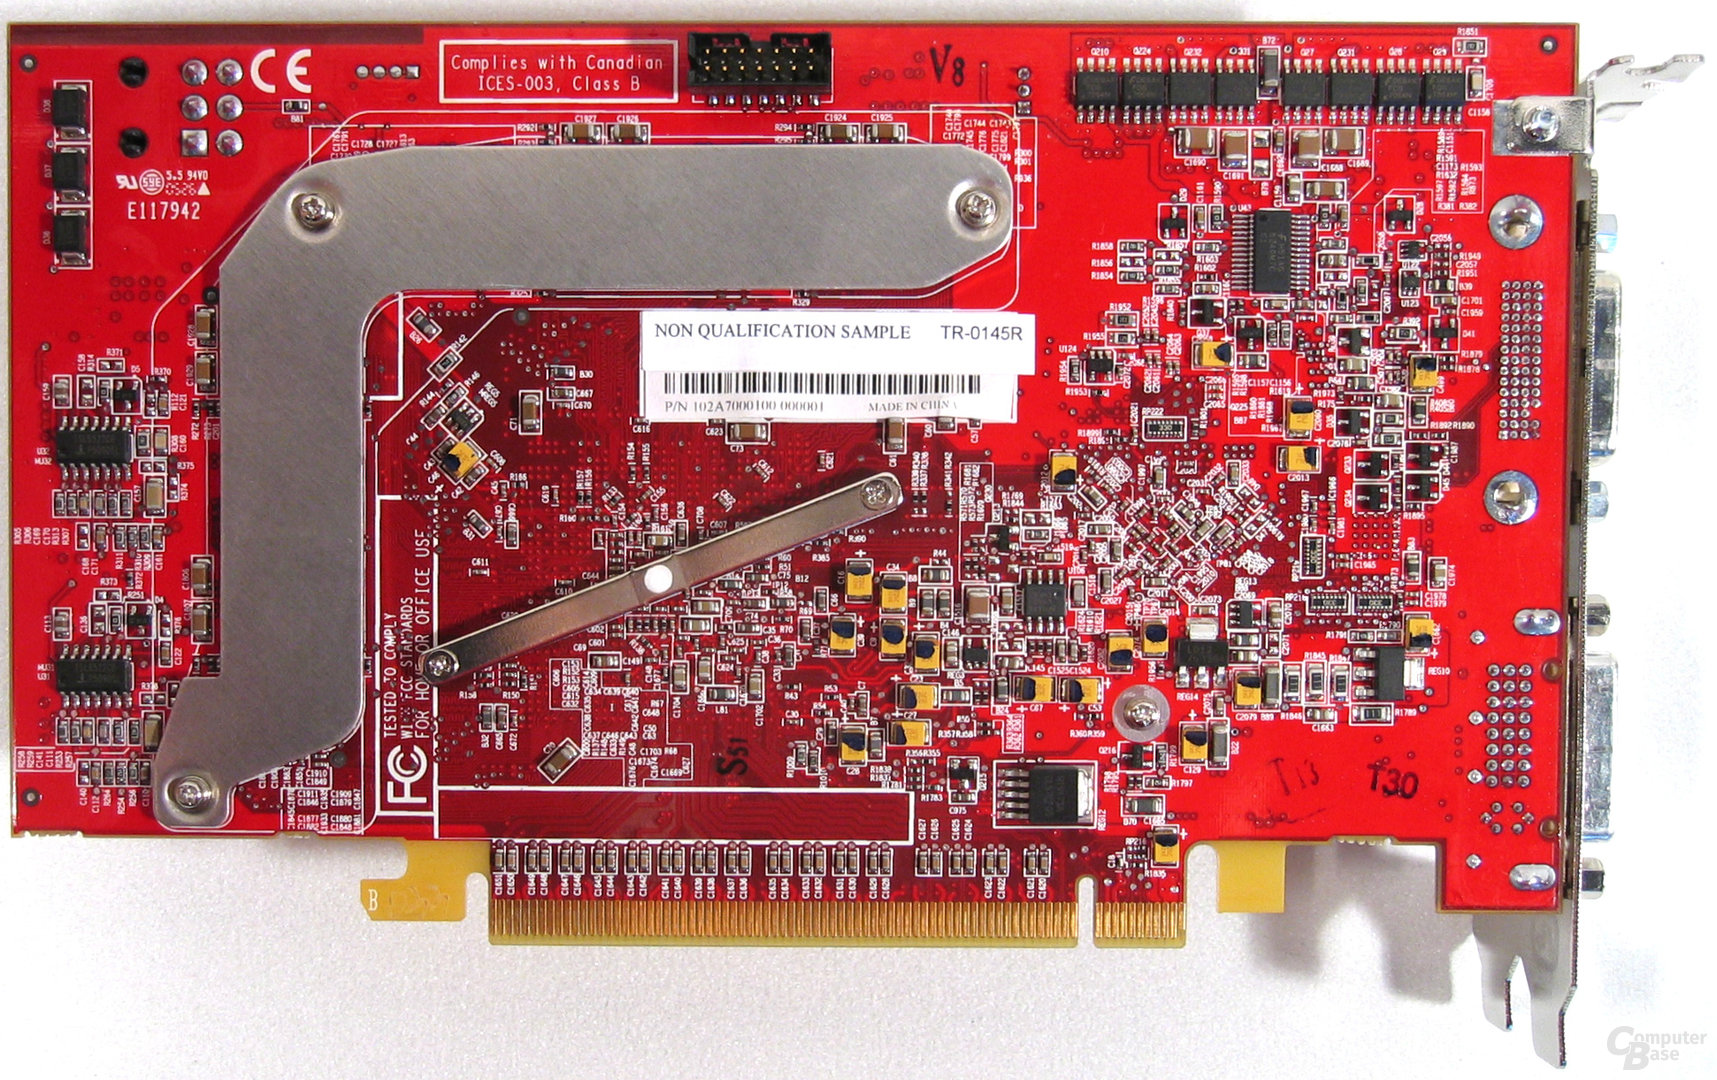 ATi Radeon X850 XT CrossFire-Edition